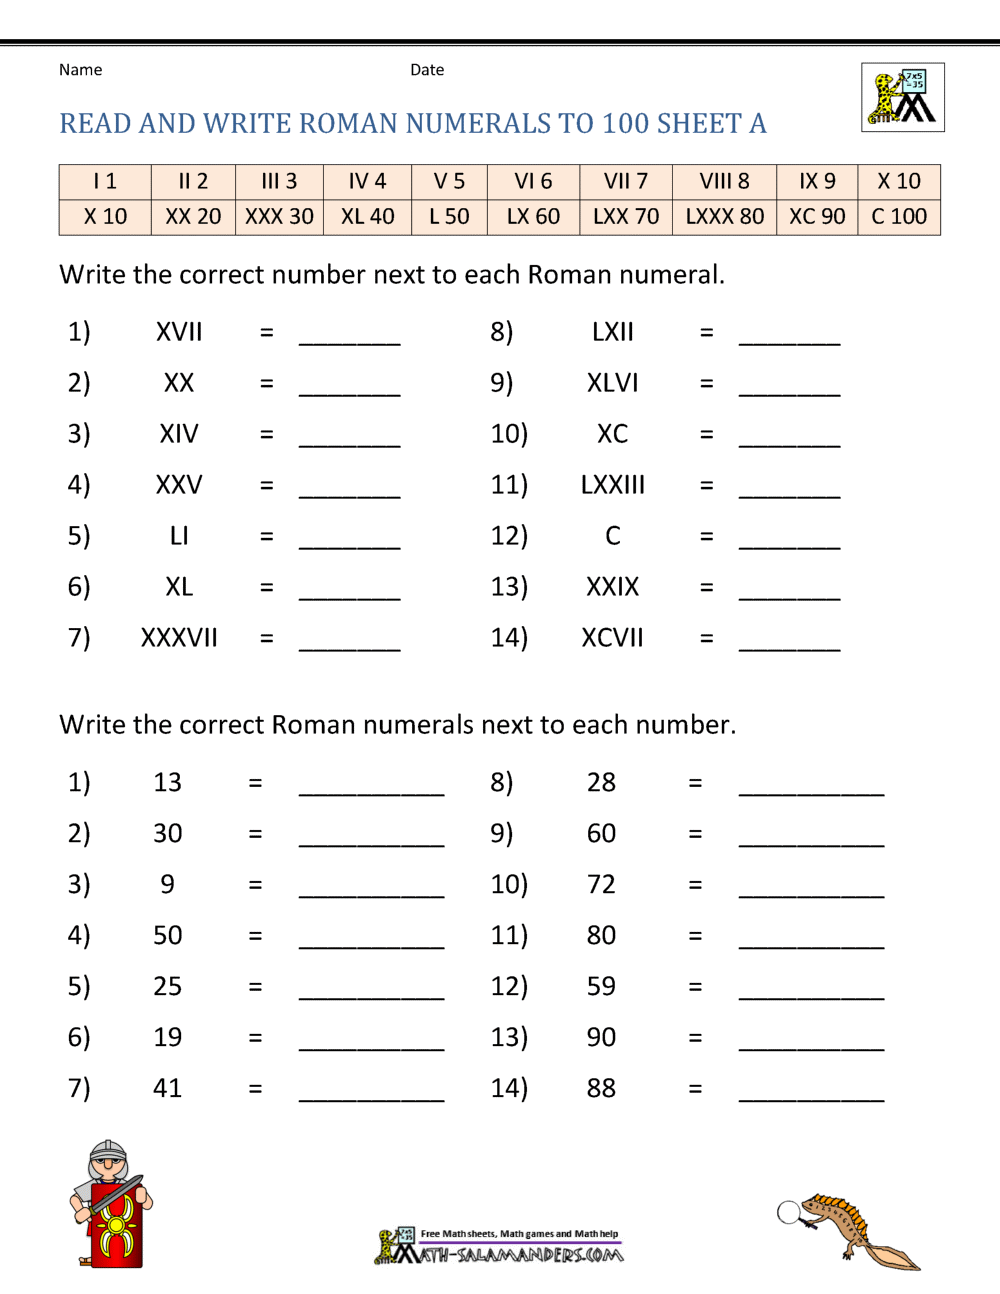 Roman Numerals Worksheet Within Roman Numerals Worksheet Pdf